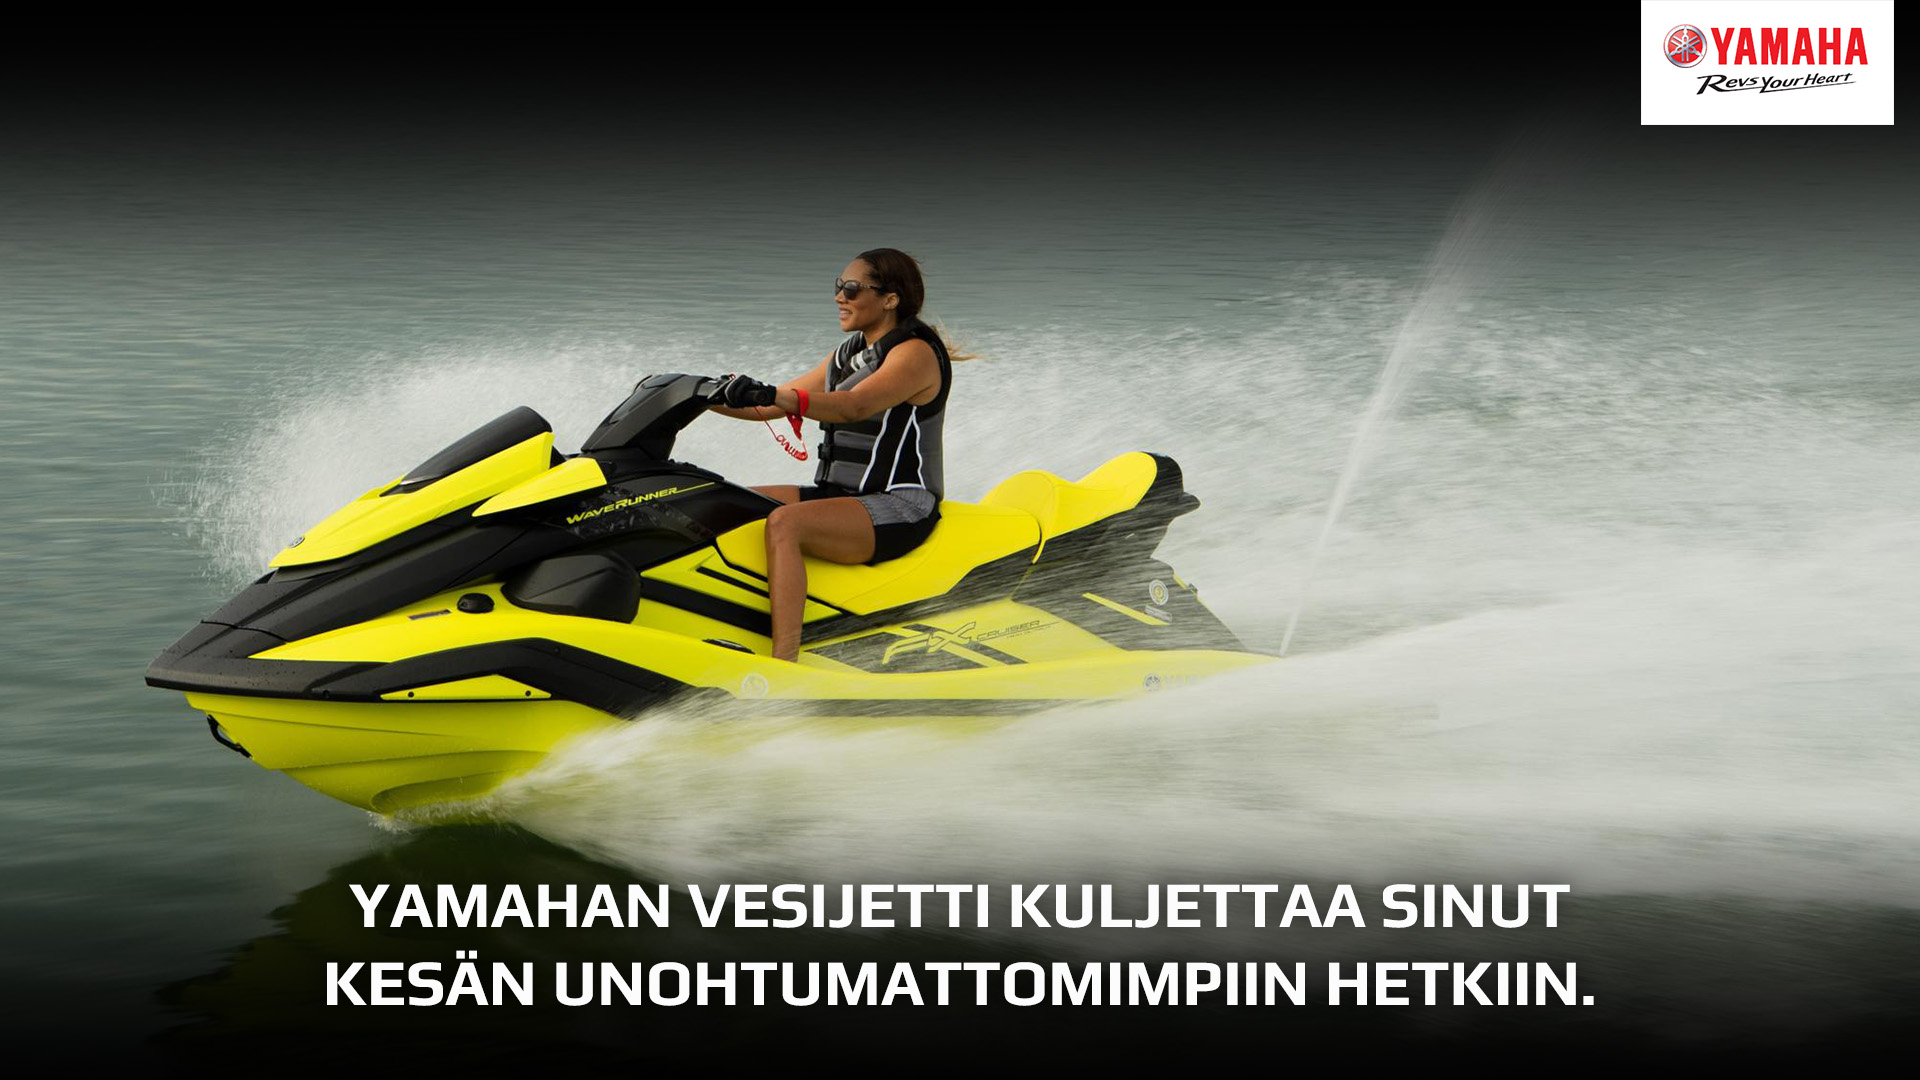 Kesä on nyt komeimmillaan! Hanki Yamaha vesijetti nyt leasing -sopimuksella edulliseen kuukausihintaan, alk. 159,50€/kk!